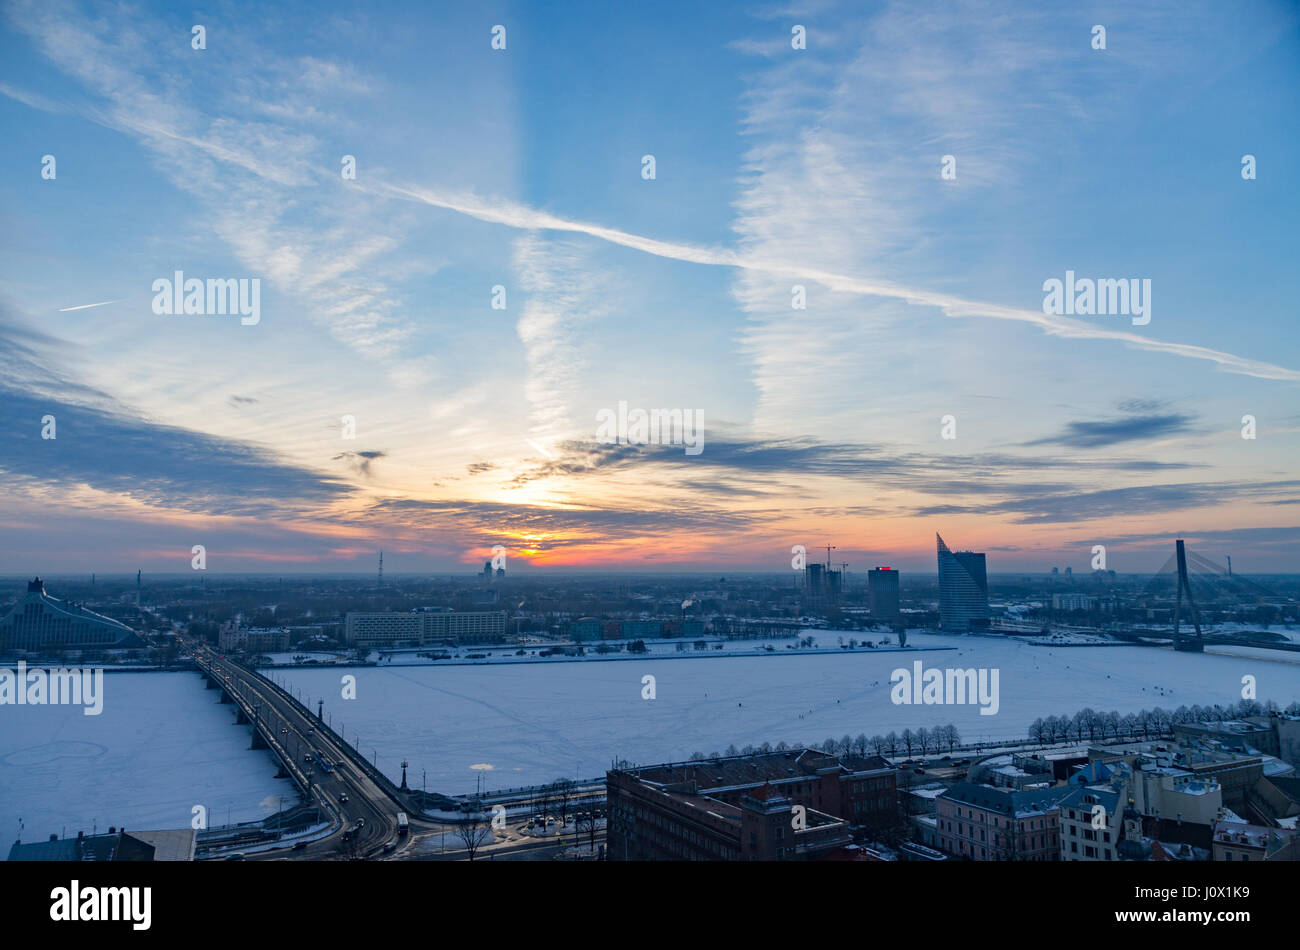 Magnifique coucher de soleil sur la rivière Daugava Riga City et en hiver, la Lettonie Banque D'Images